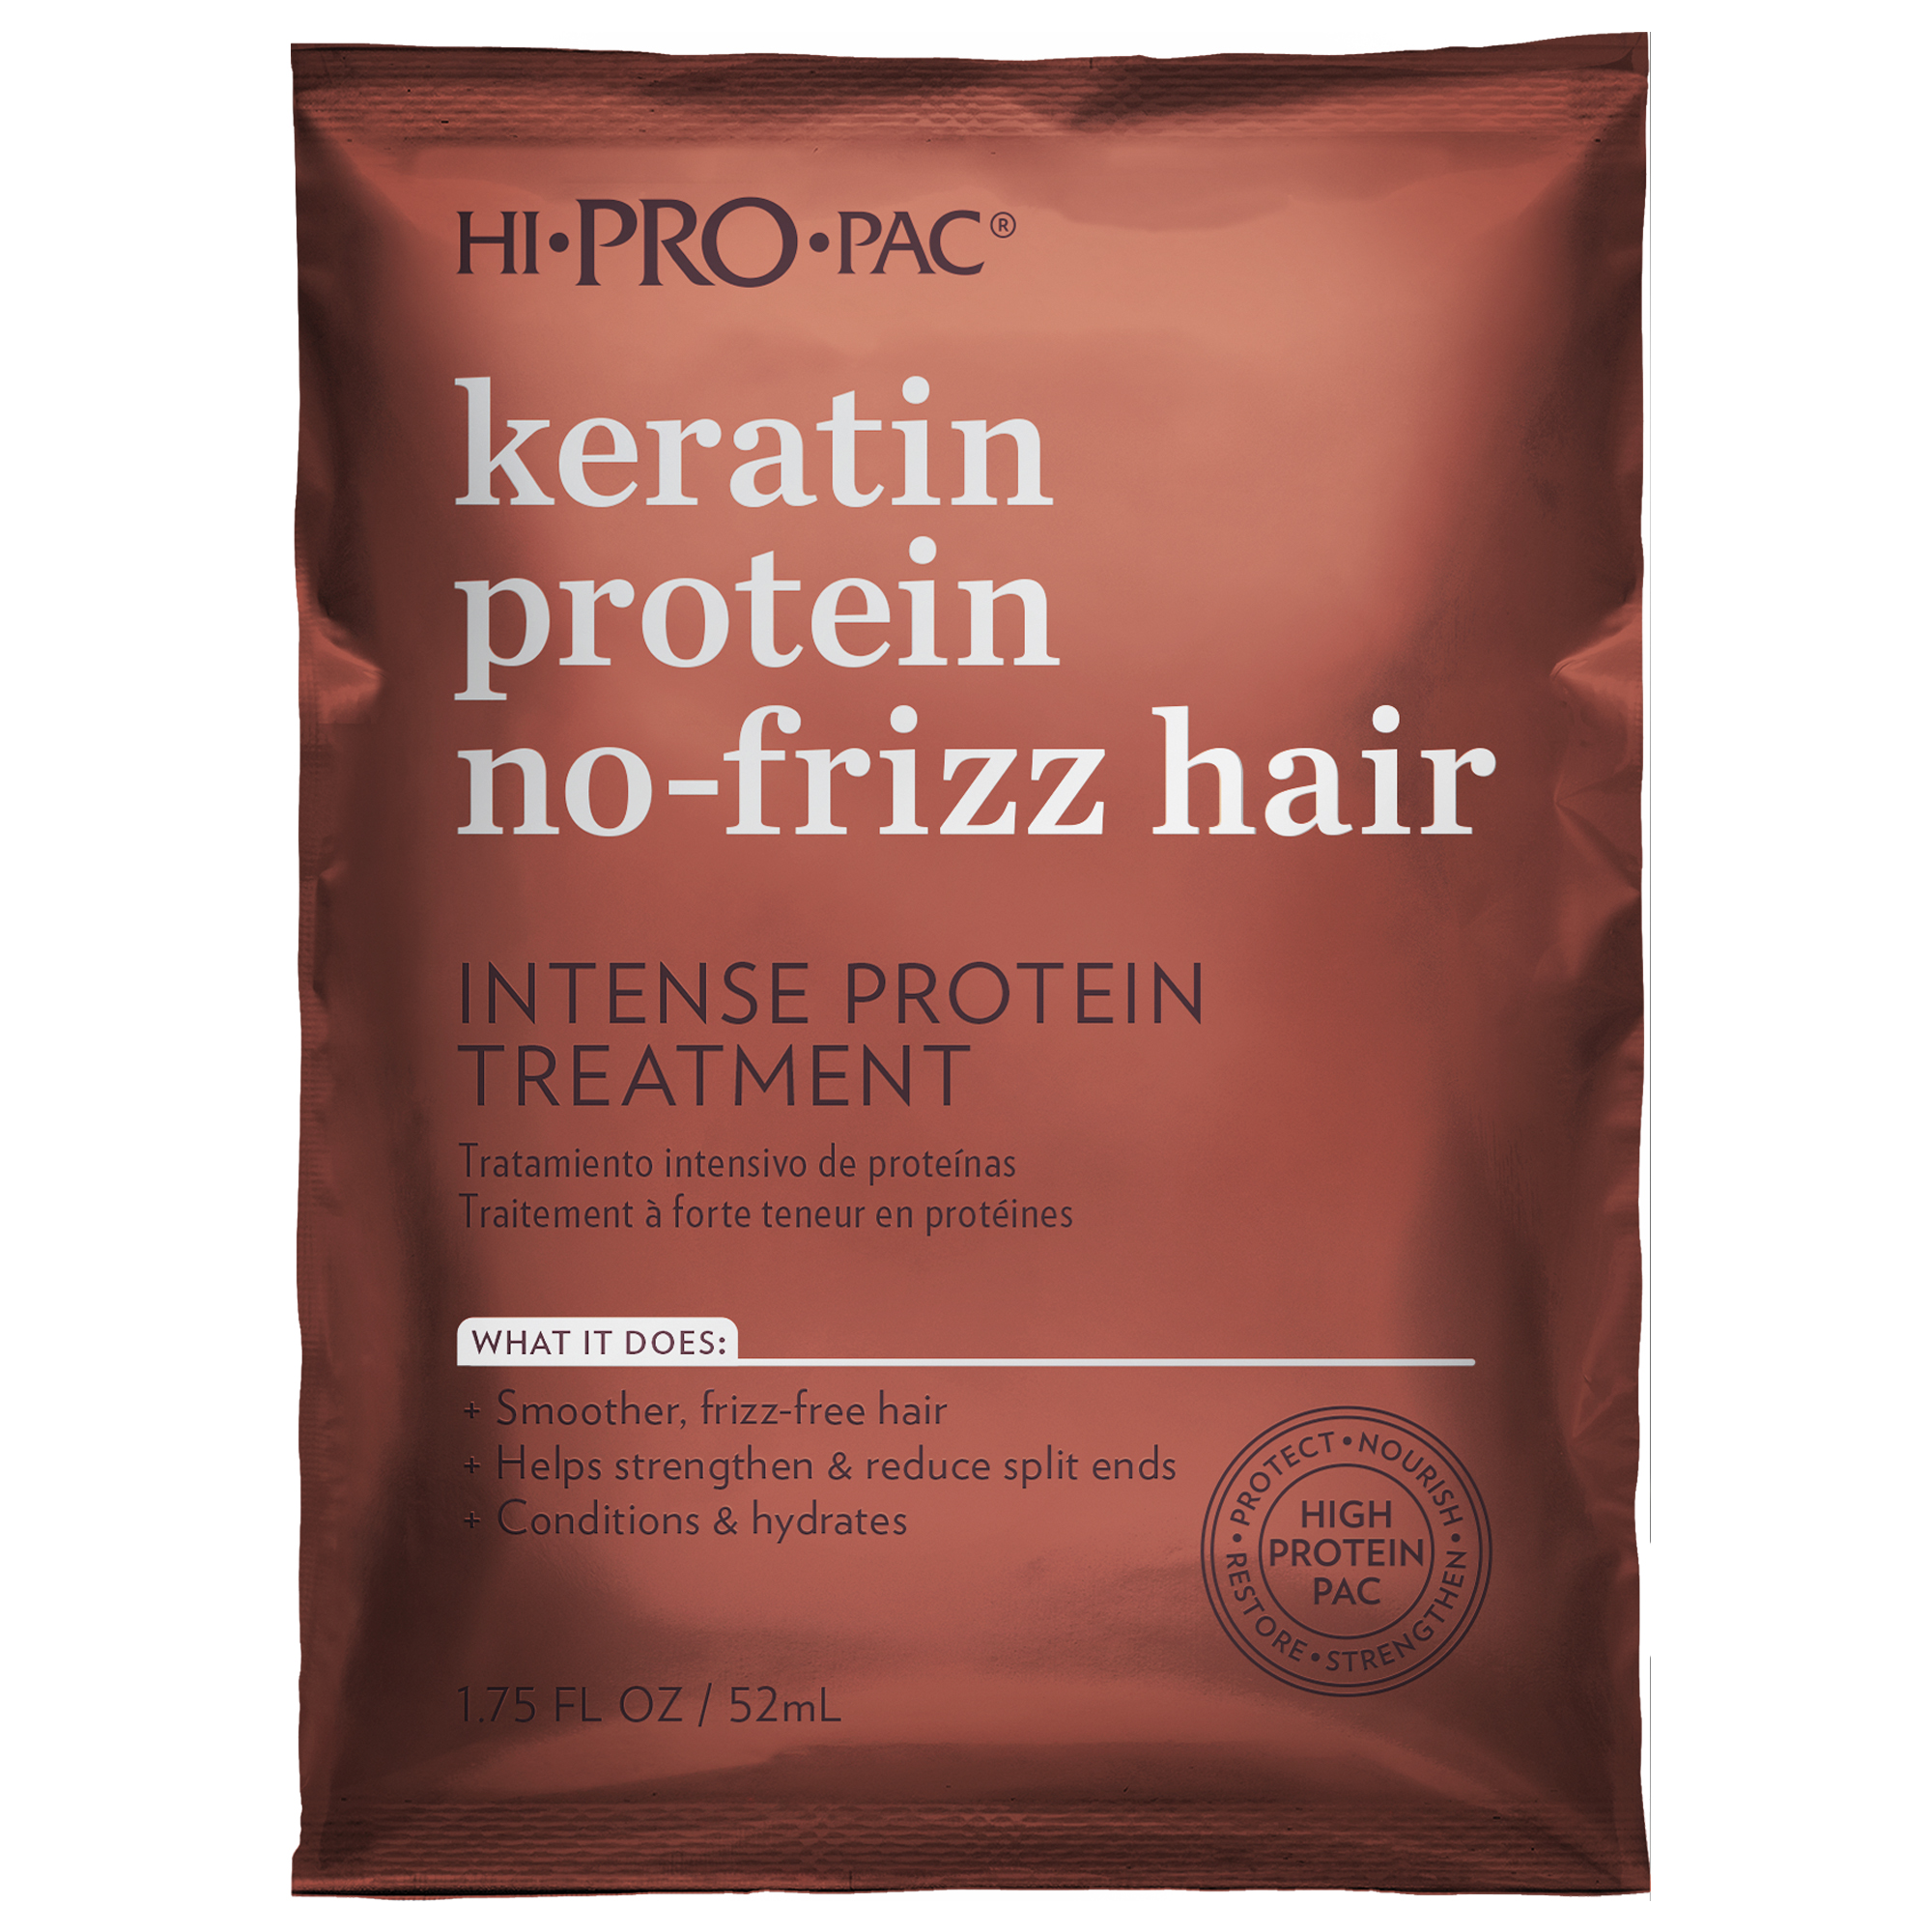 Keratin Protein No Frizz Hair – DeMert Brands